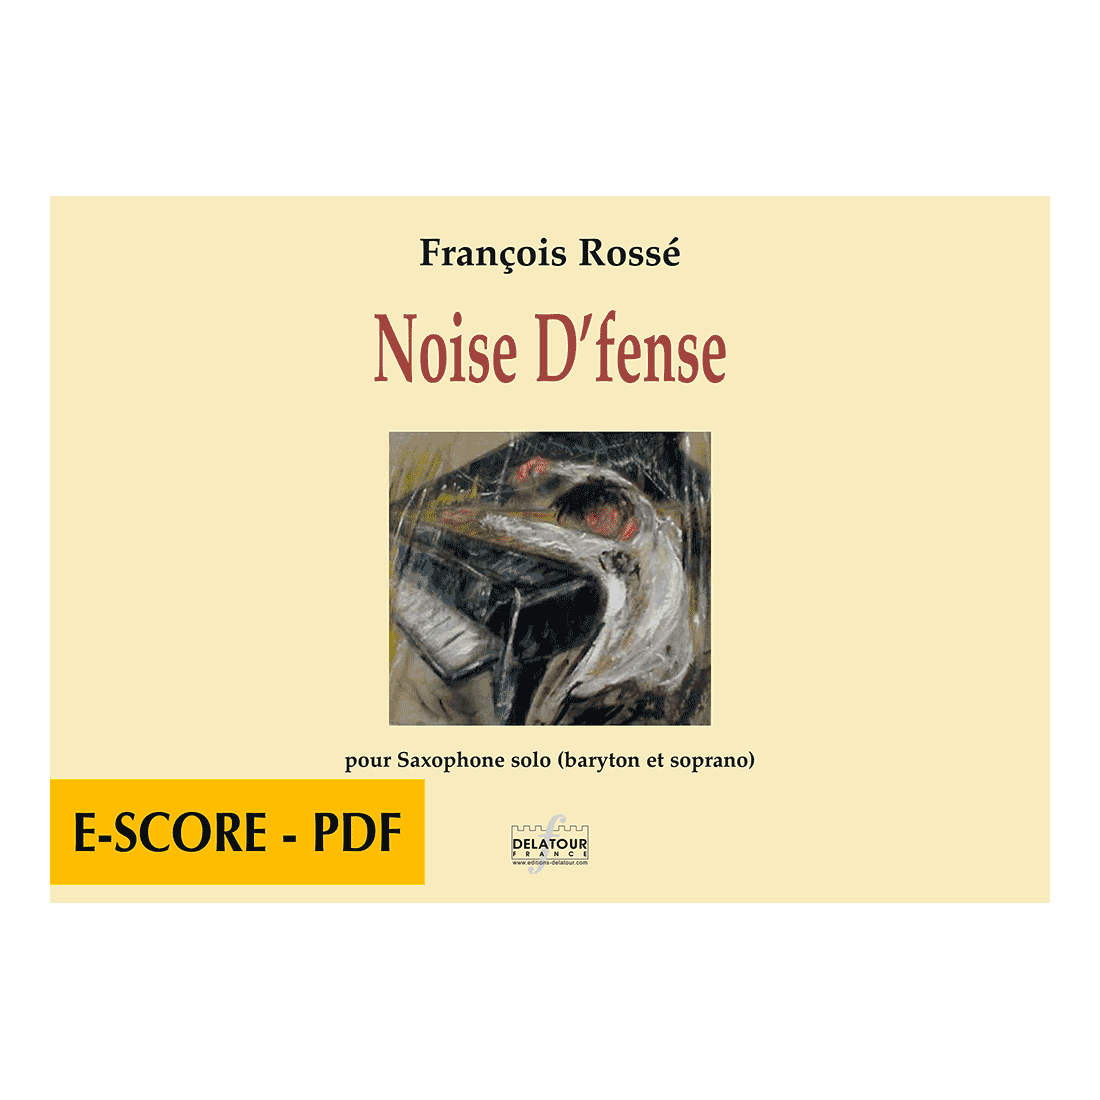 Noise D'fense für Saxophon solo - E-score PDF